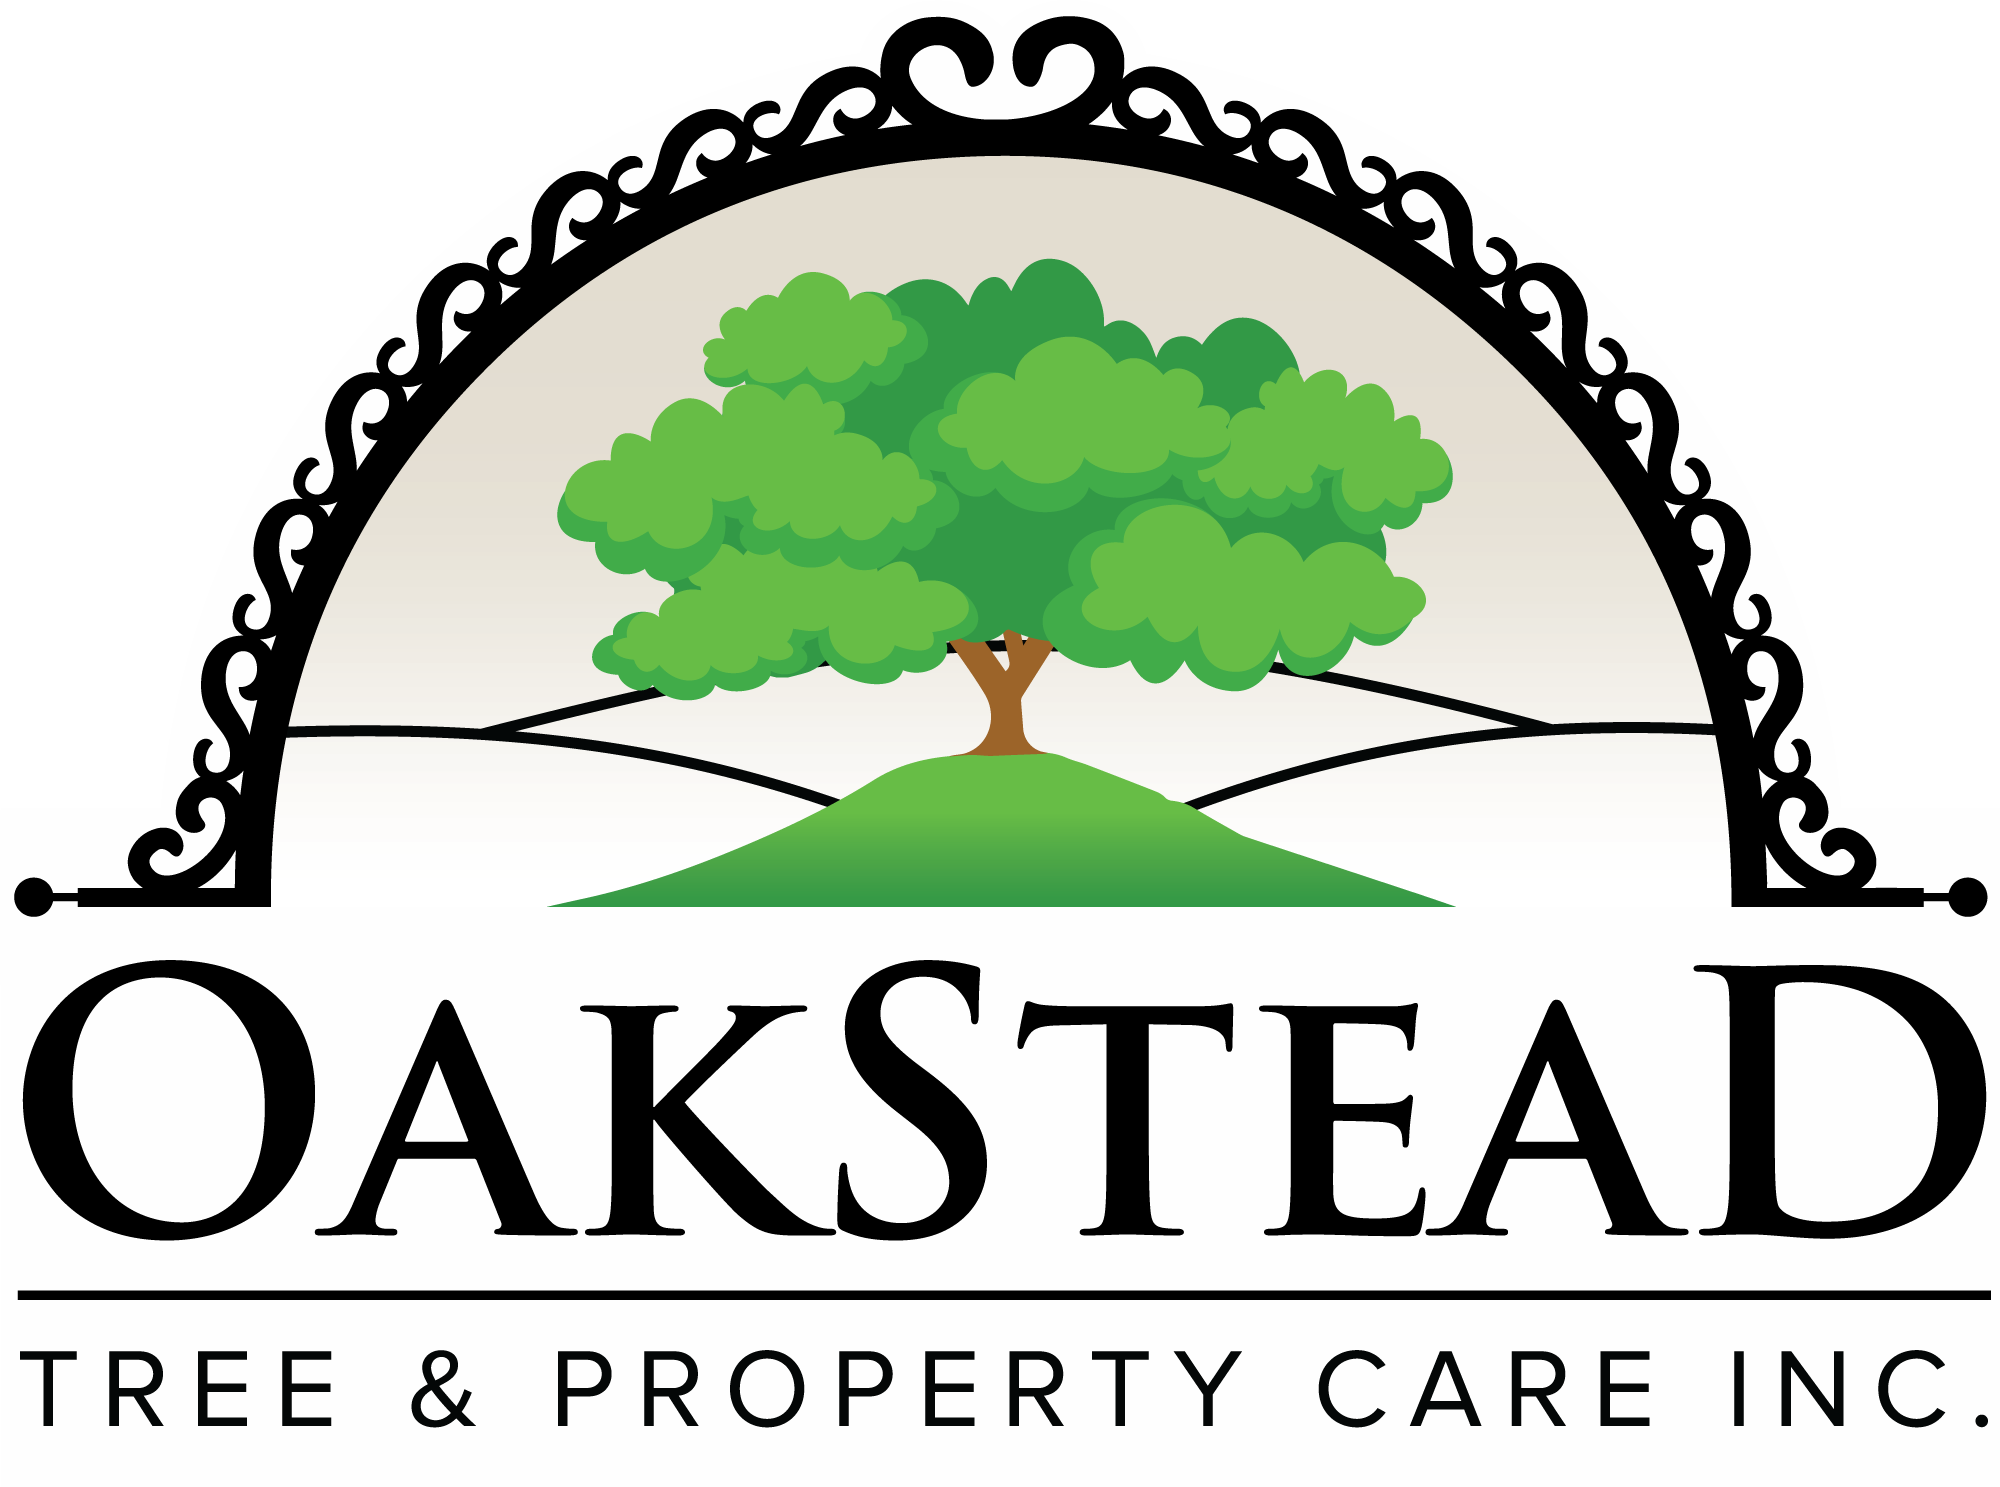 Oakstead Victoria Tree Service, Arborist & Property Care